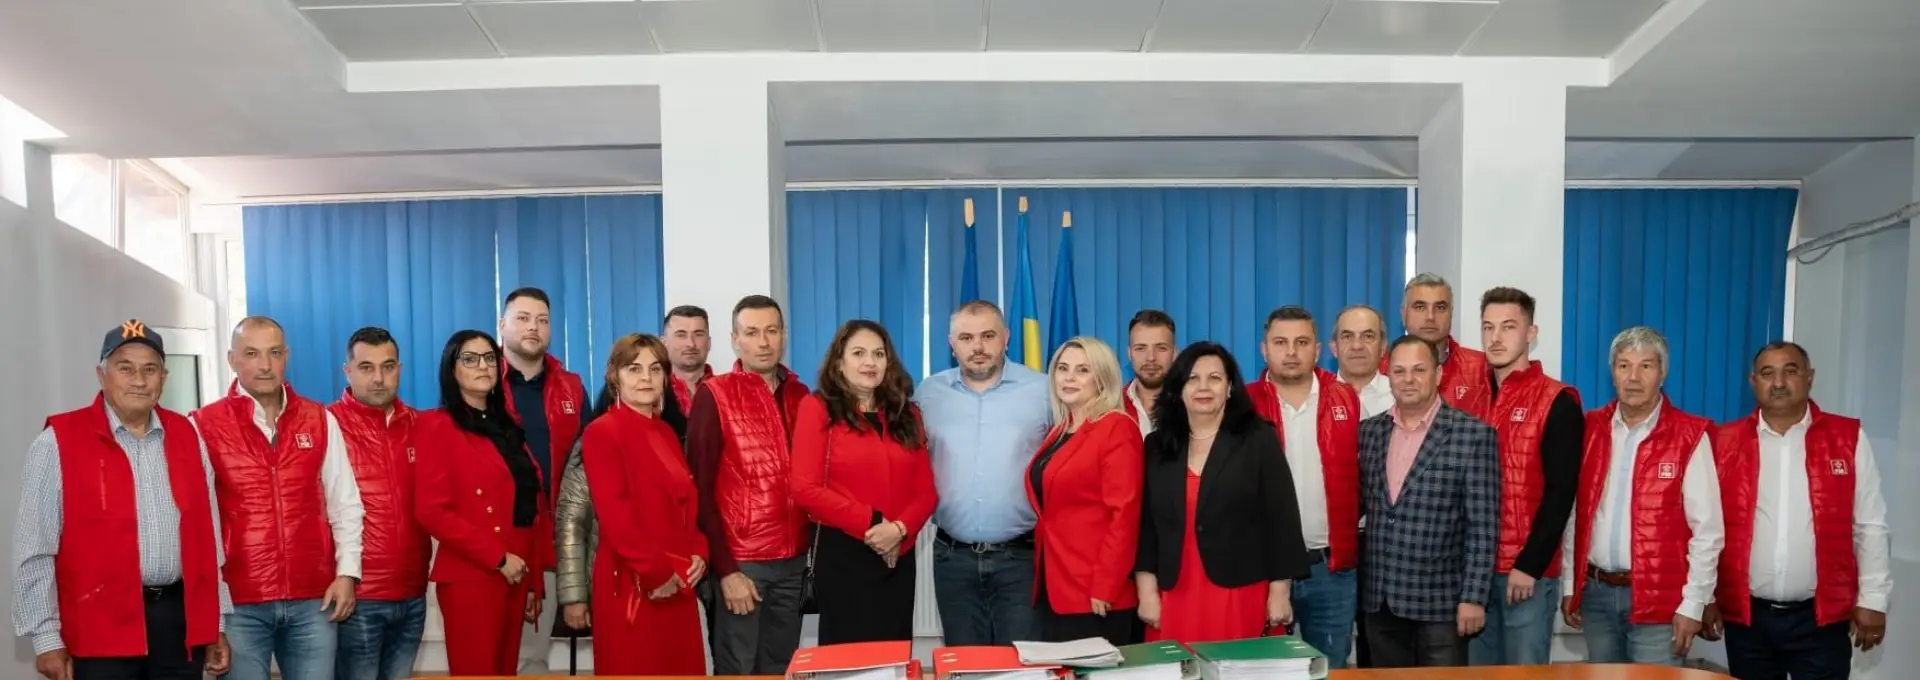 Foto Cătălin Rotea şi-a depus candidatura pentru noul mandat de primar al Balşului